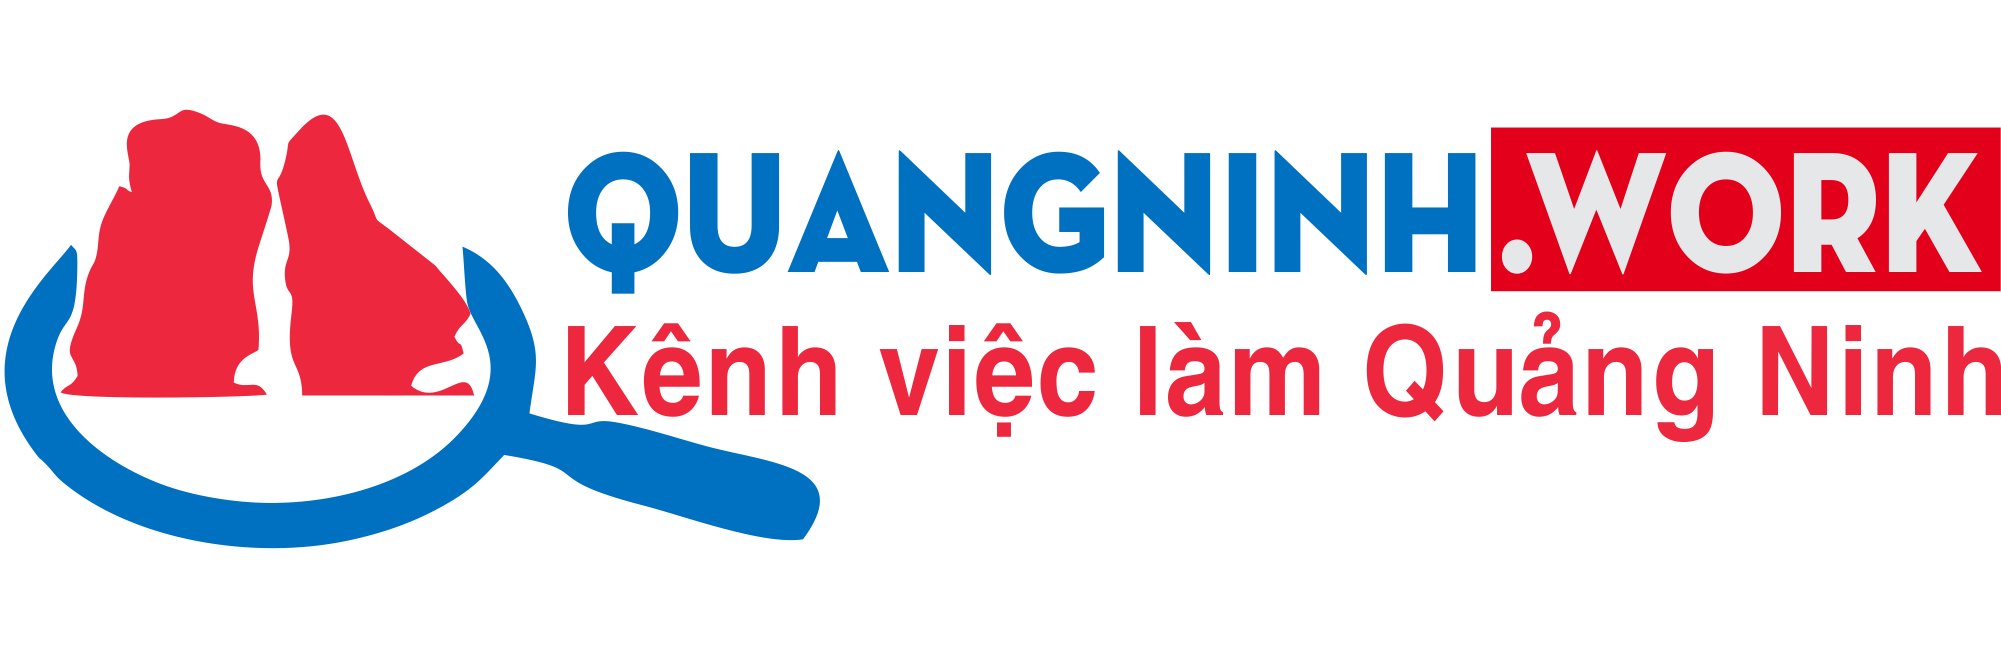 Quang Ninh Work 03